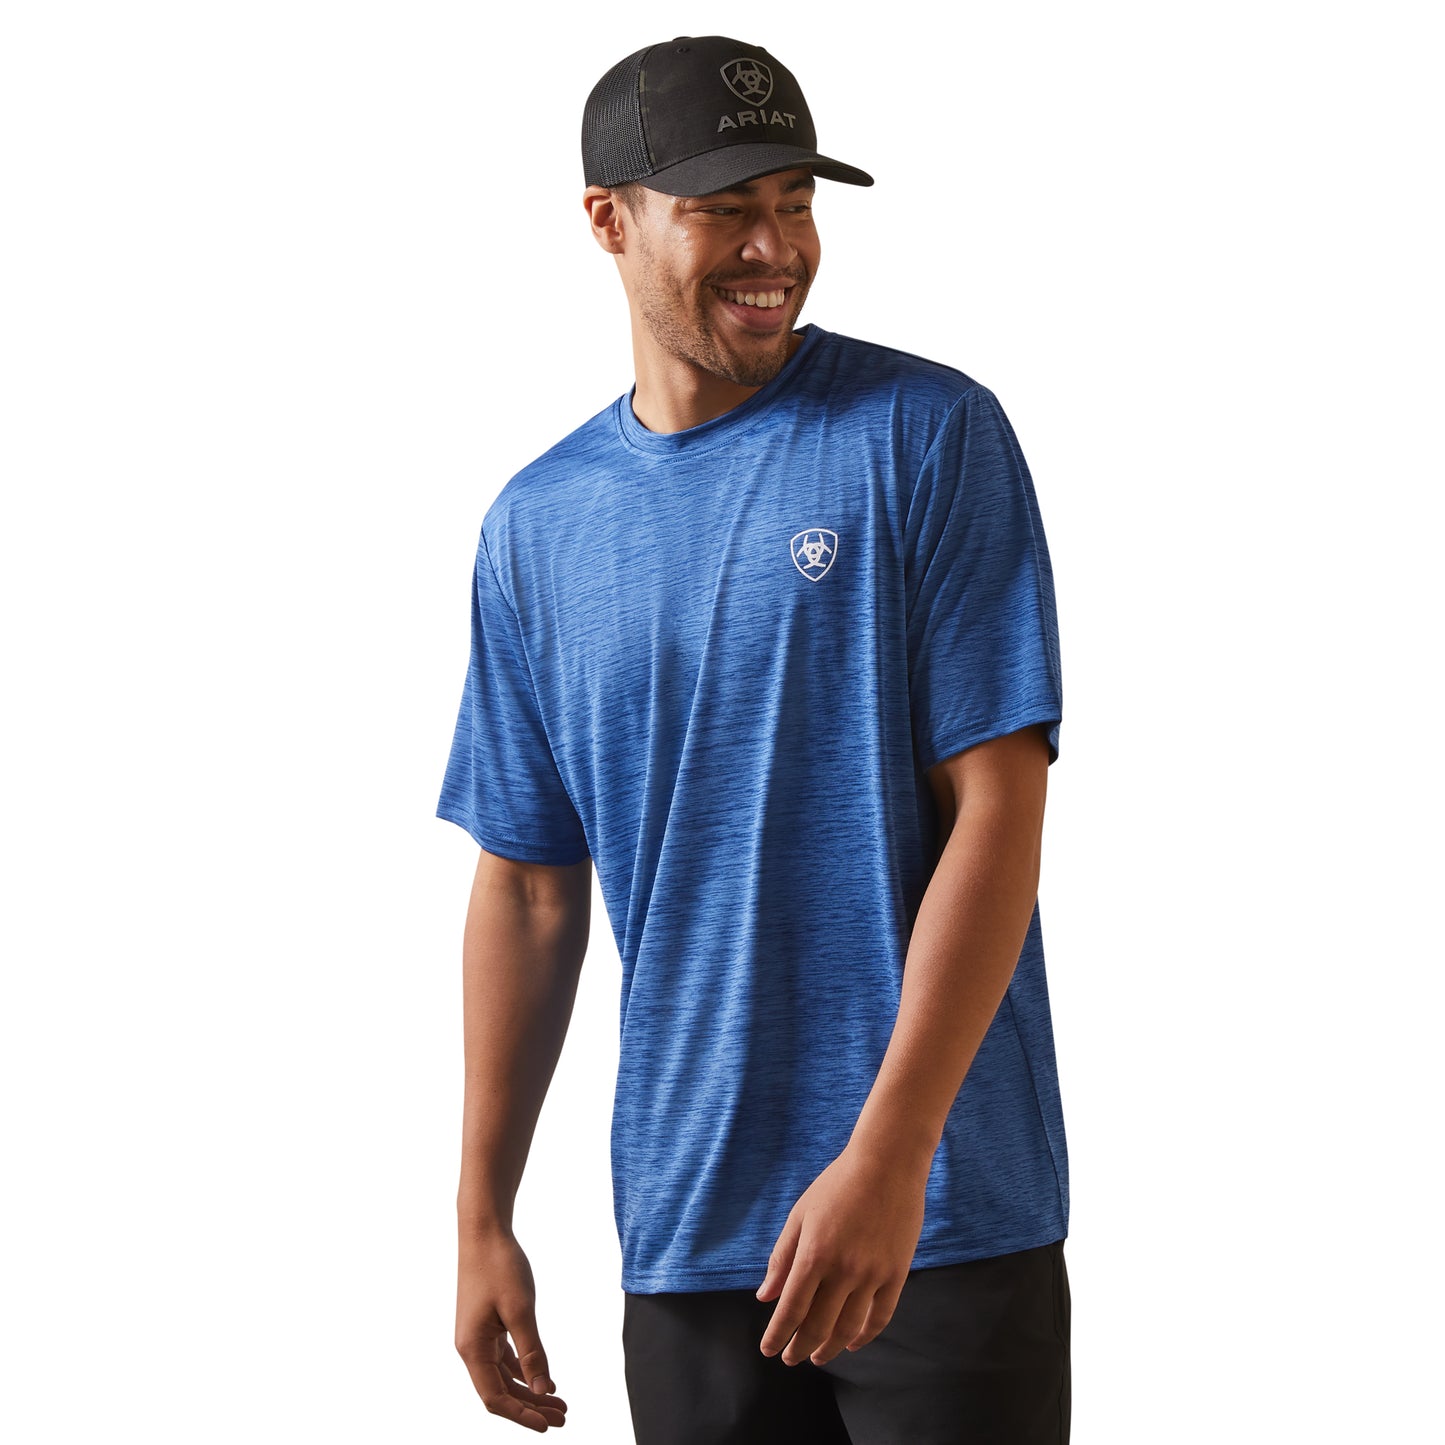 Ariat® Men's Charger Proud Shield Monaco Blue T-Shirt 10043764